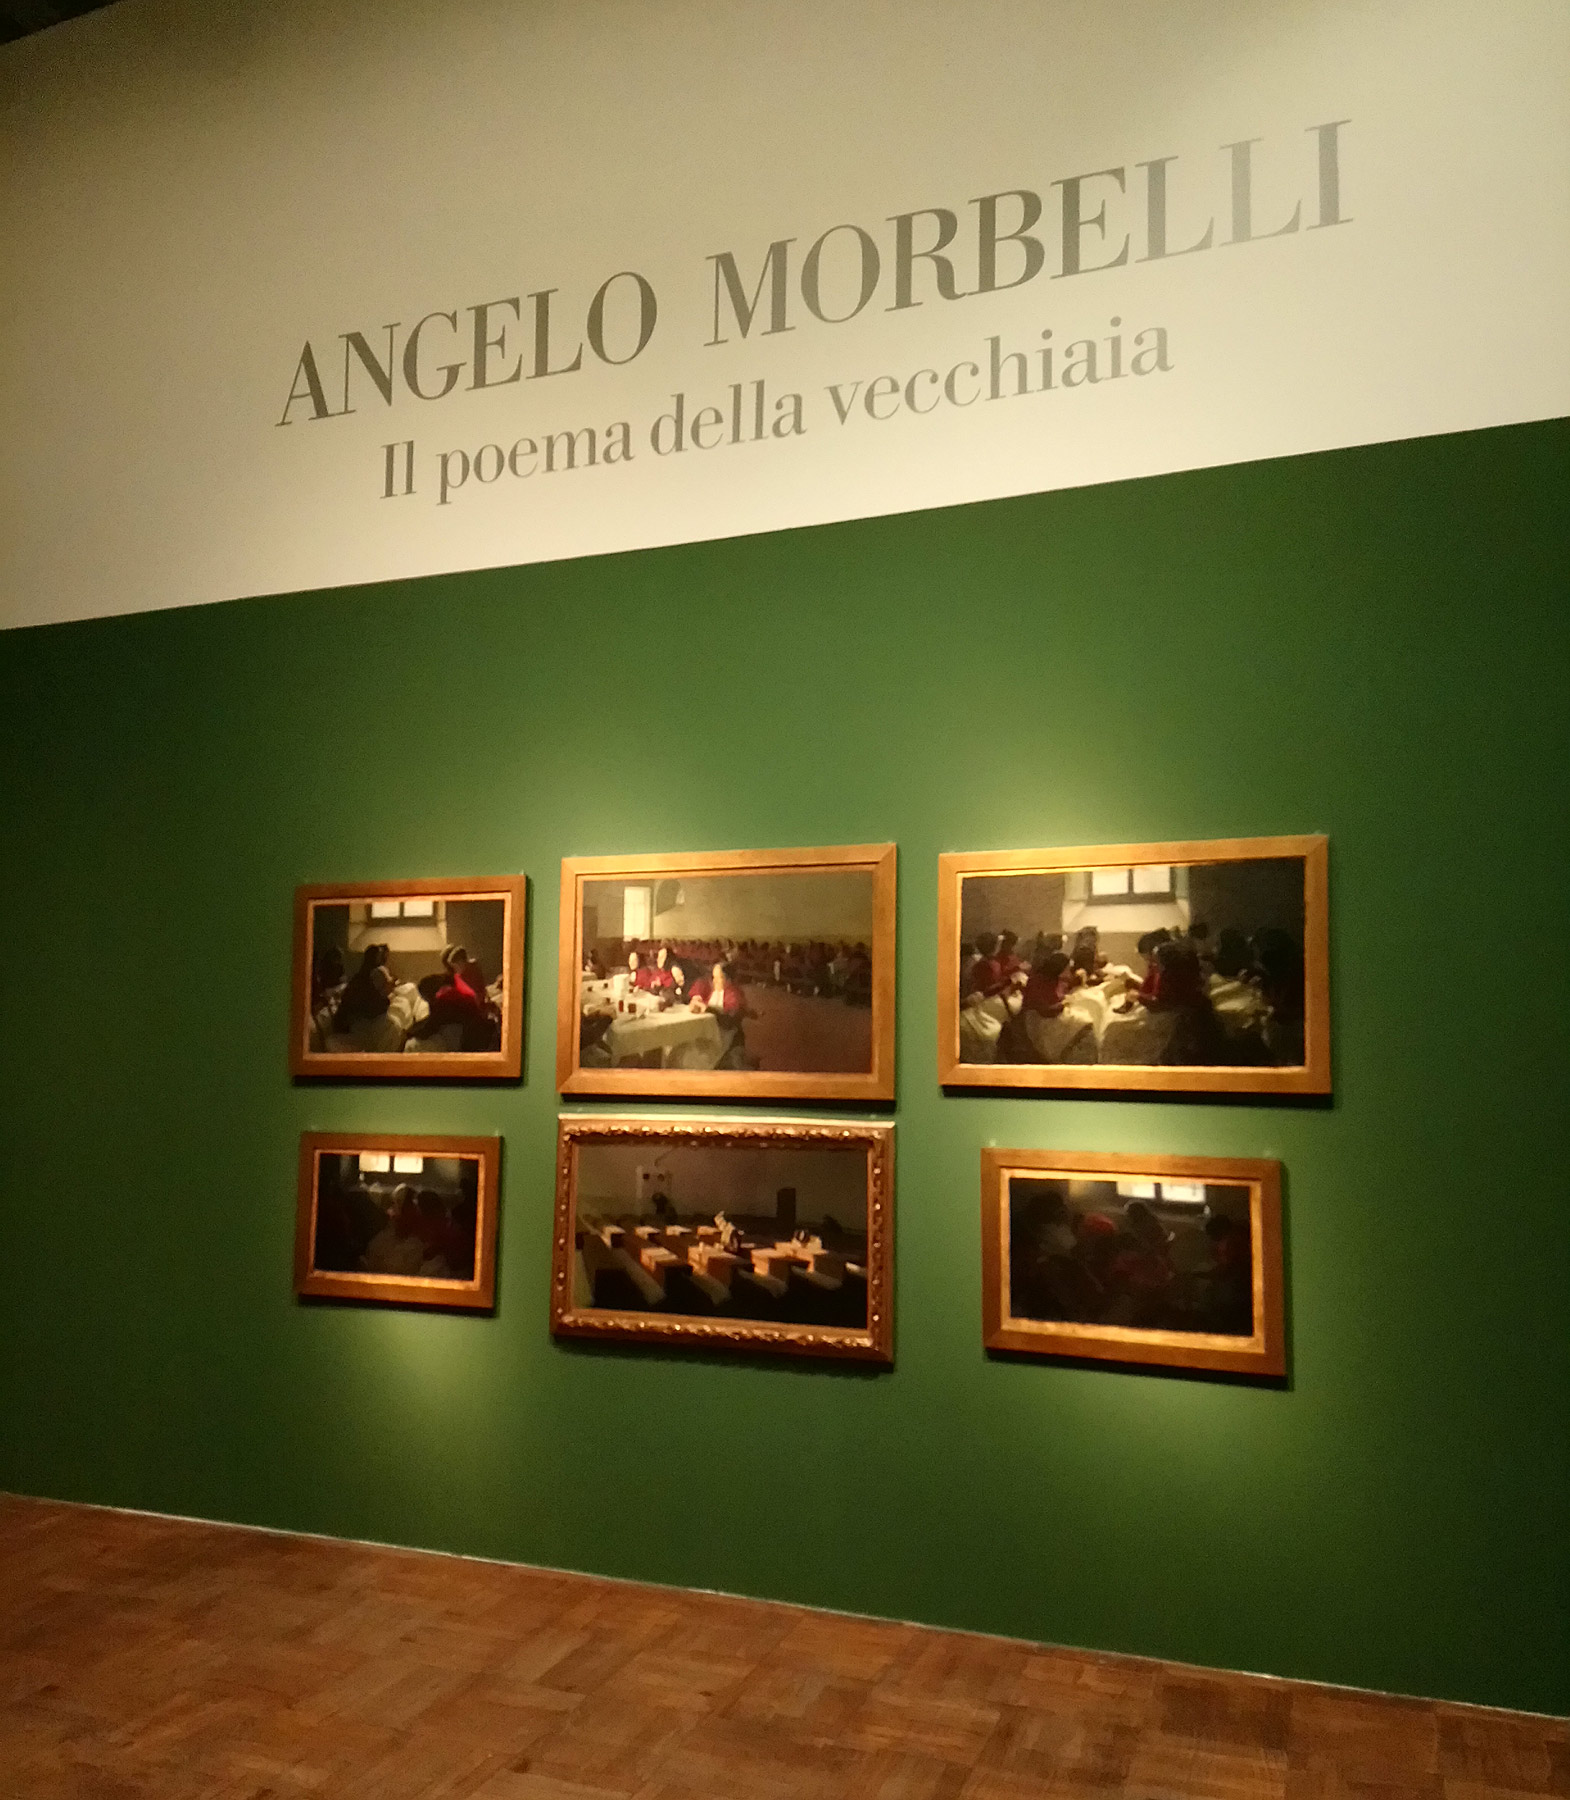 Le sei tele del Poema della Vecchiaia in mostra a Venezia (Galleria Internazionale d'Arte Moderna di Ca' Pesaro) nel 2018. Ph. Credit Finestre sull'Arte 